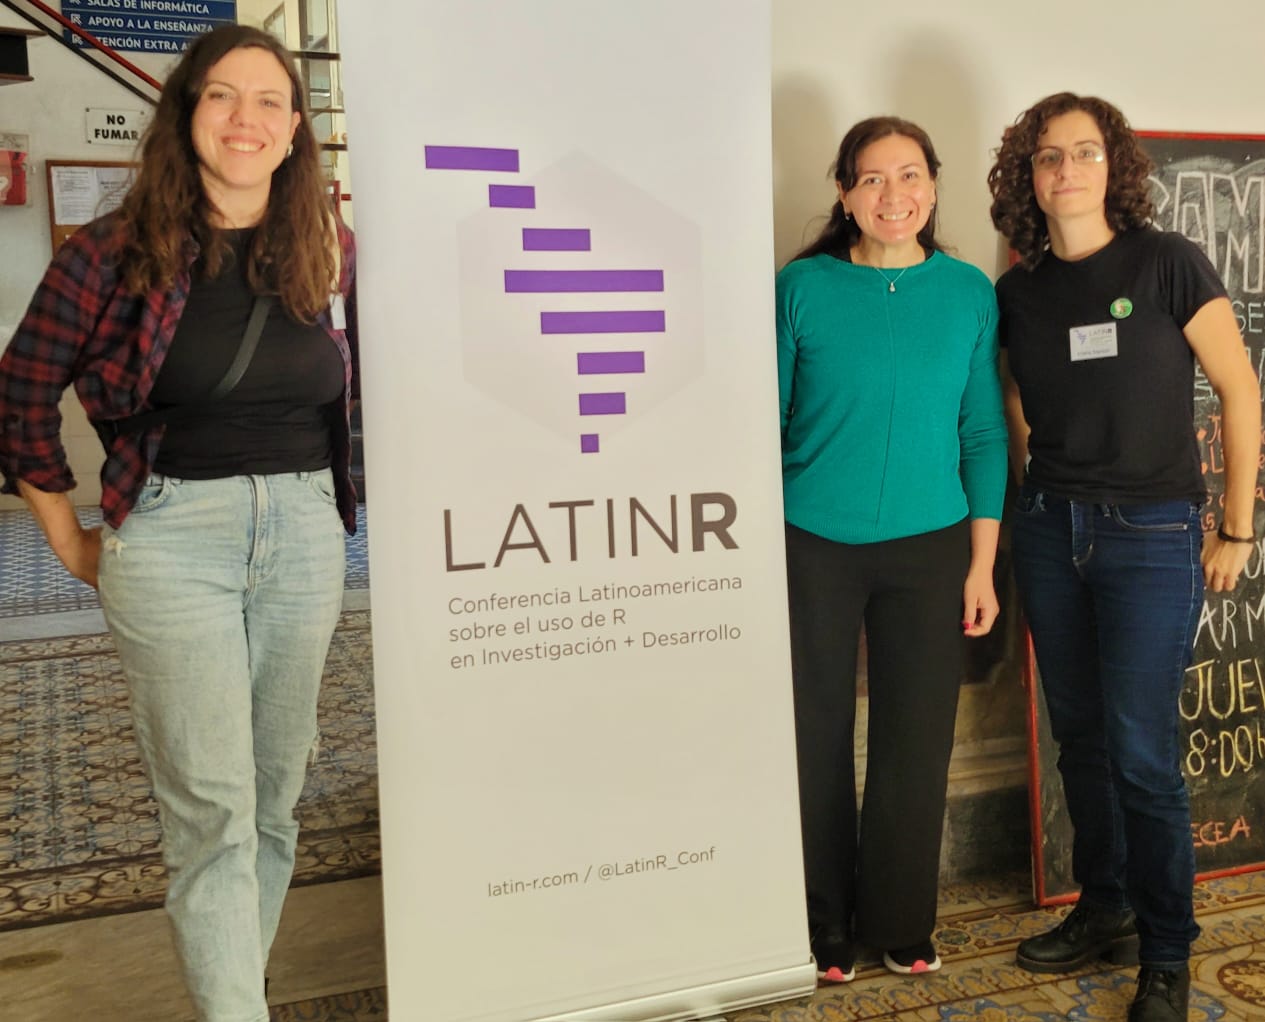 Jesica Formoso, Patricia Loto y María Cristina Nanton también participaron de LatinR